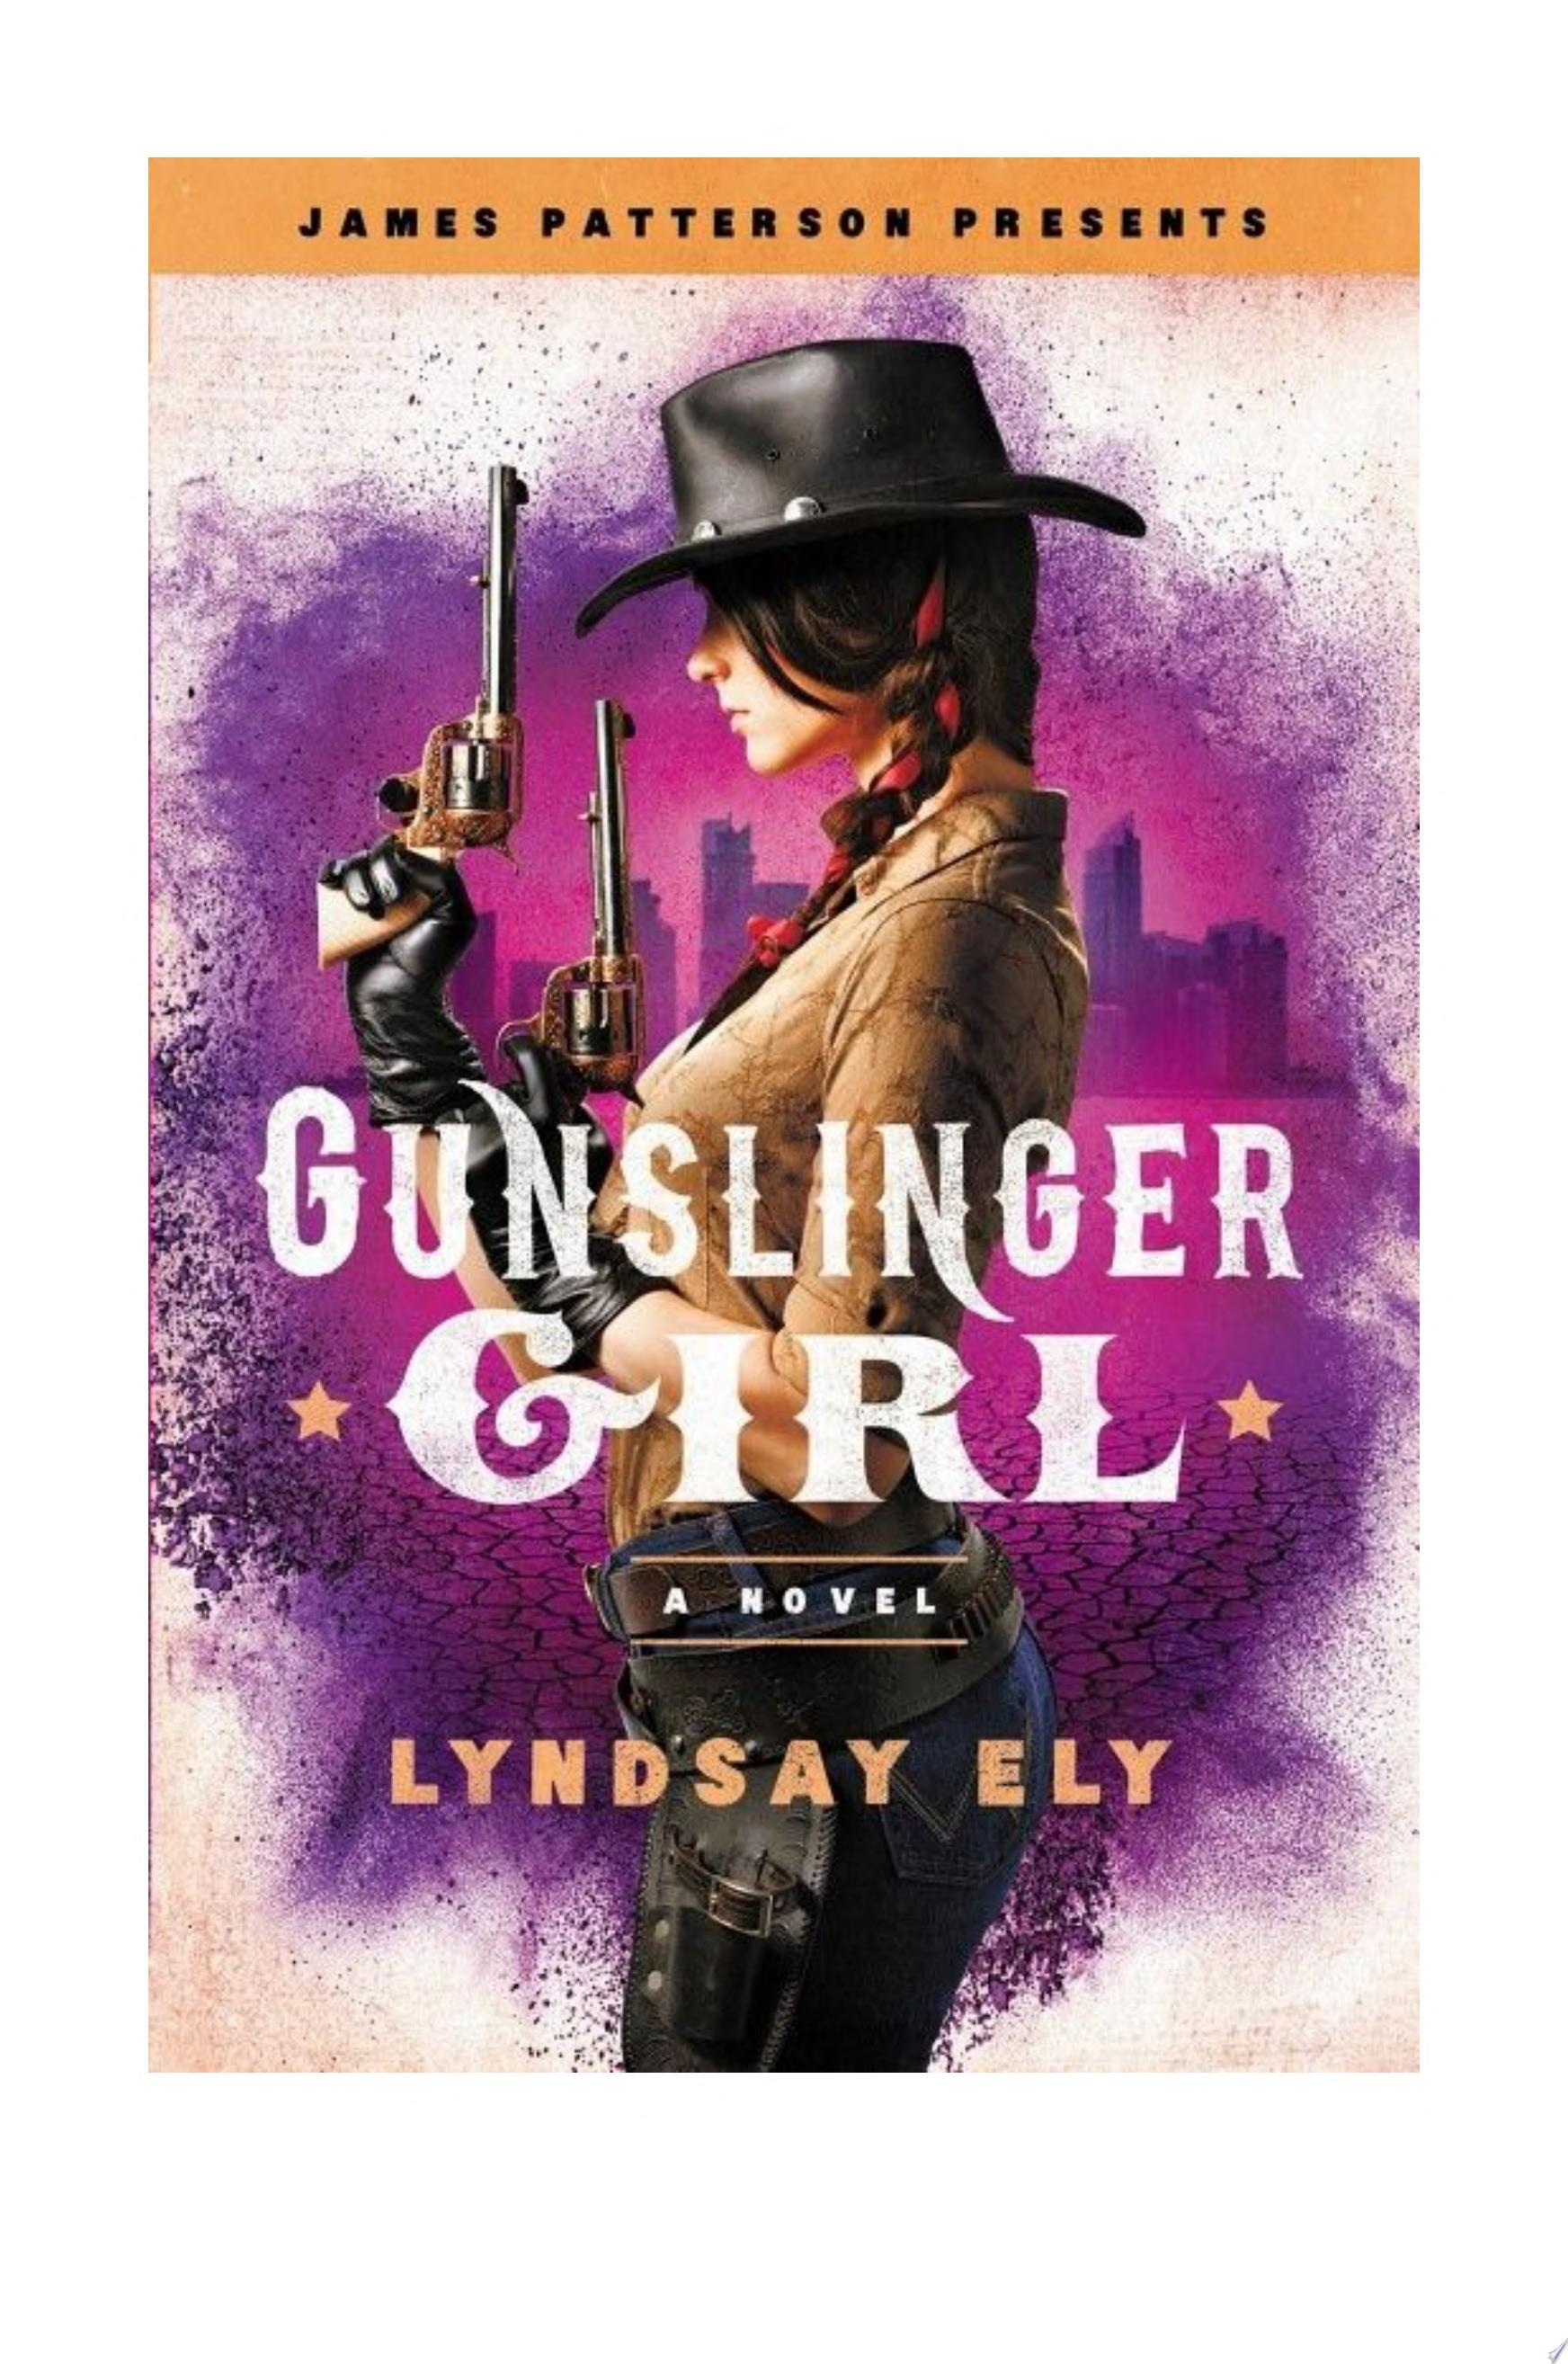 Image for "Gunslinger Girl"